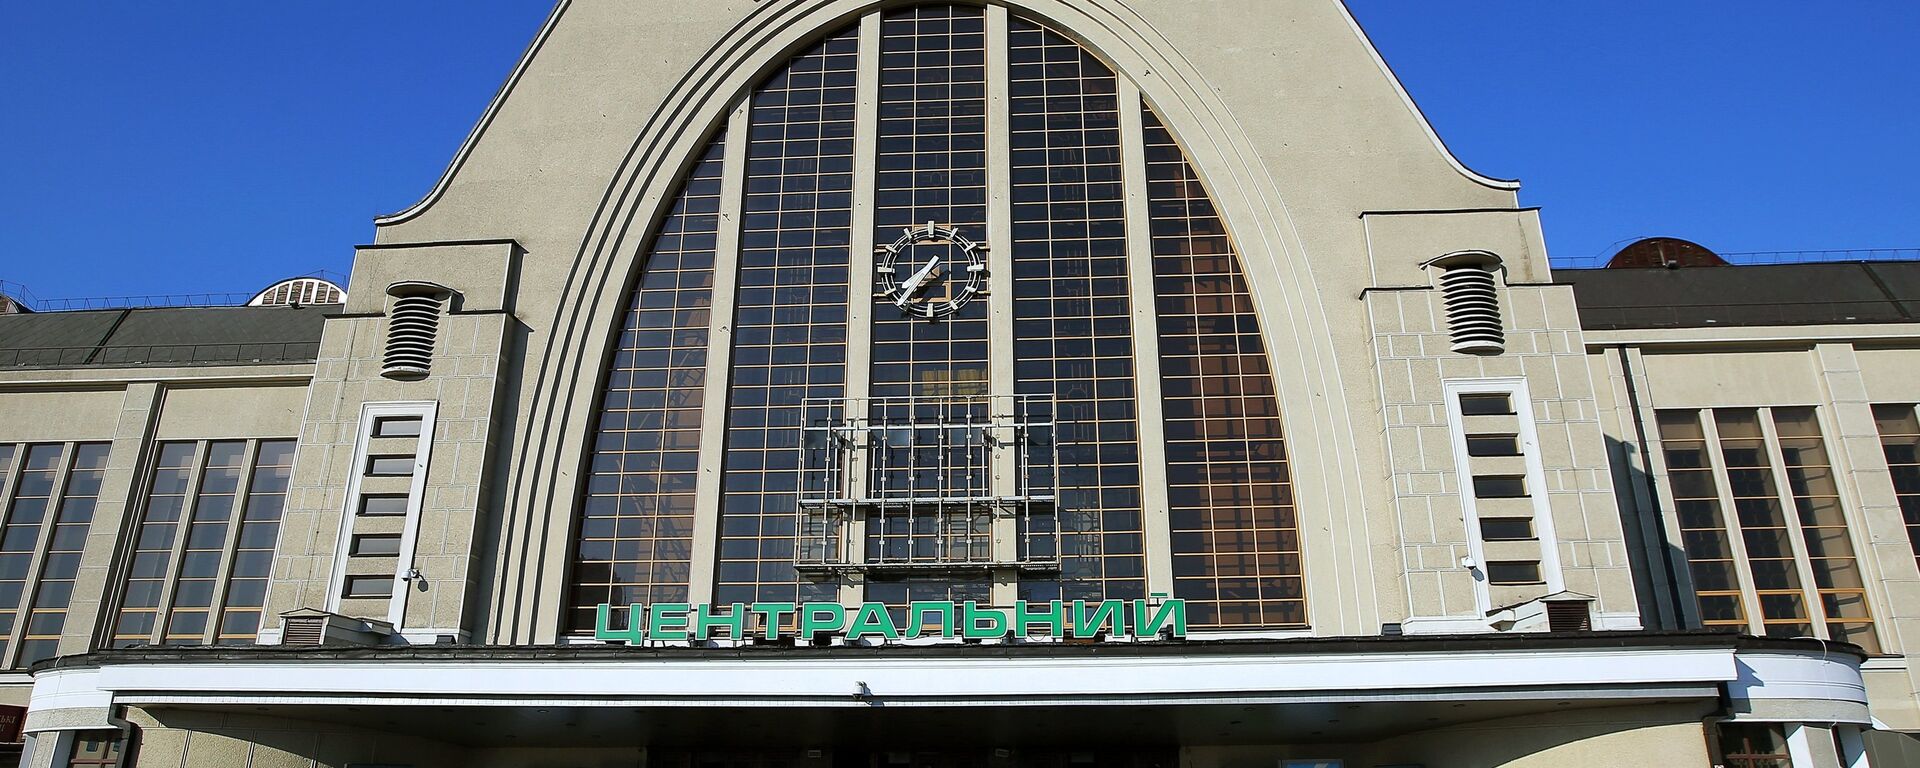 Здание Центрального железнодорожного вокзала в Киеве. - Sputnik Латвия, 1920, 27.09.2018